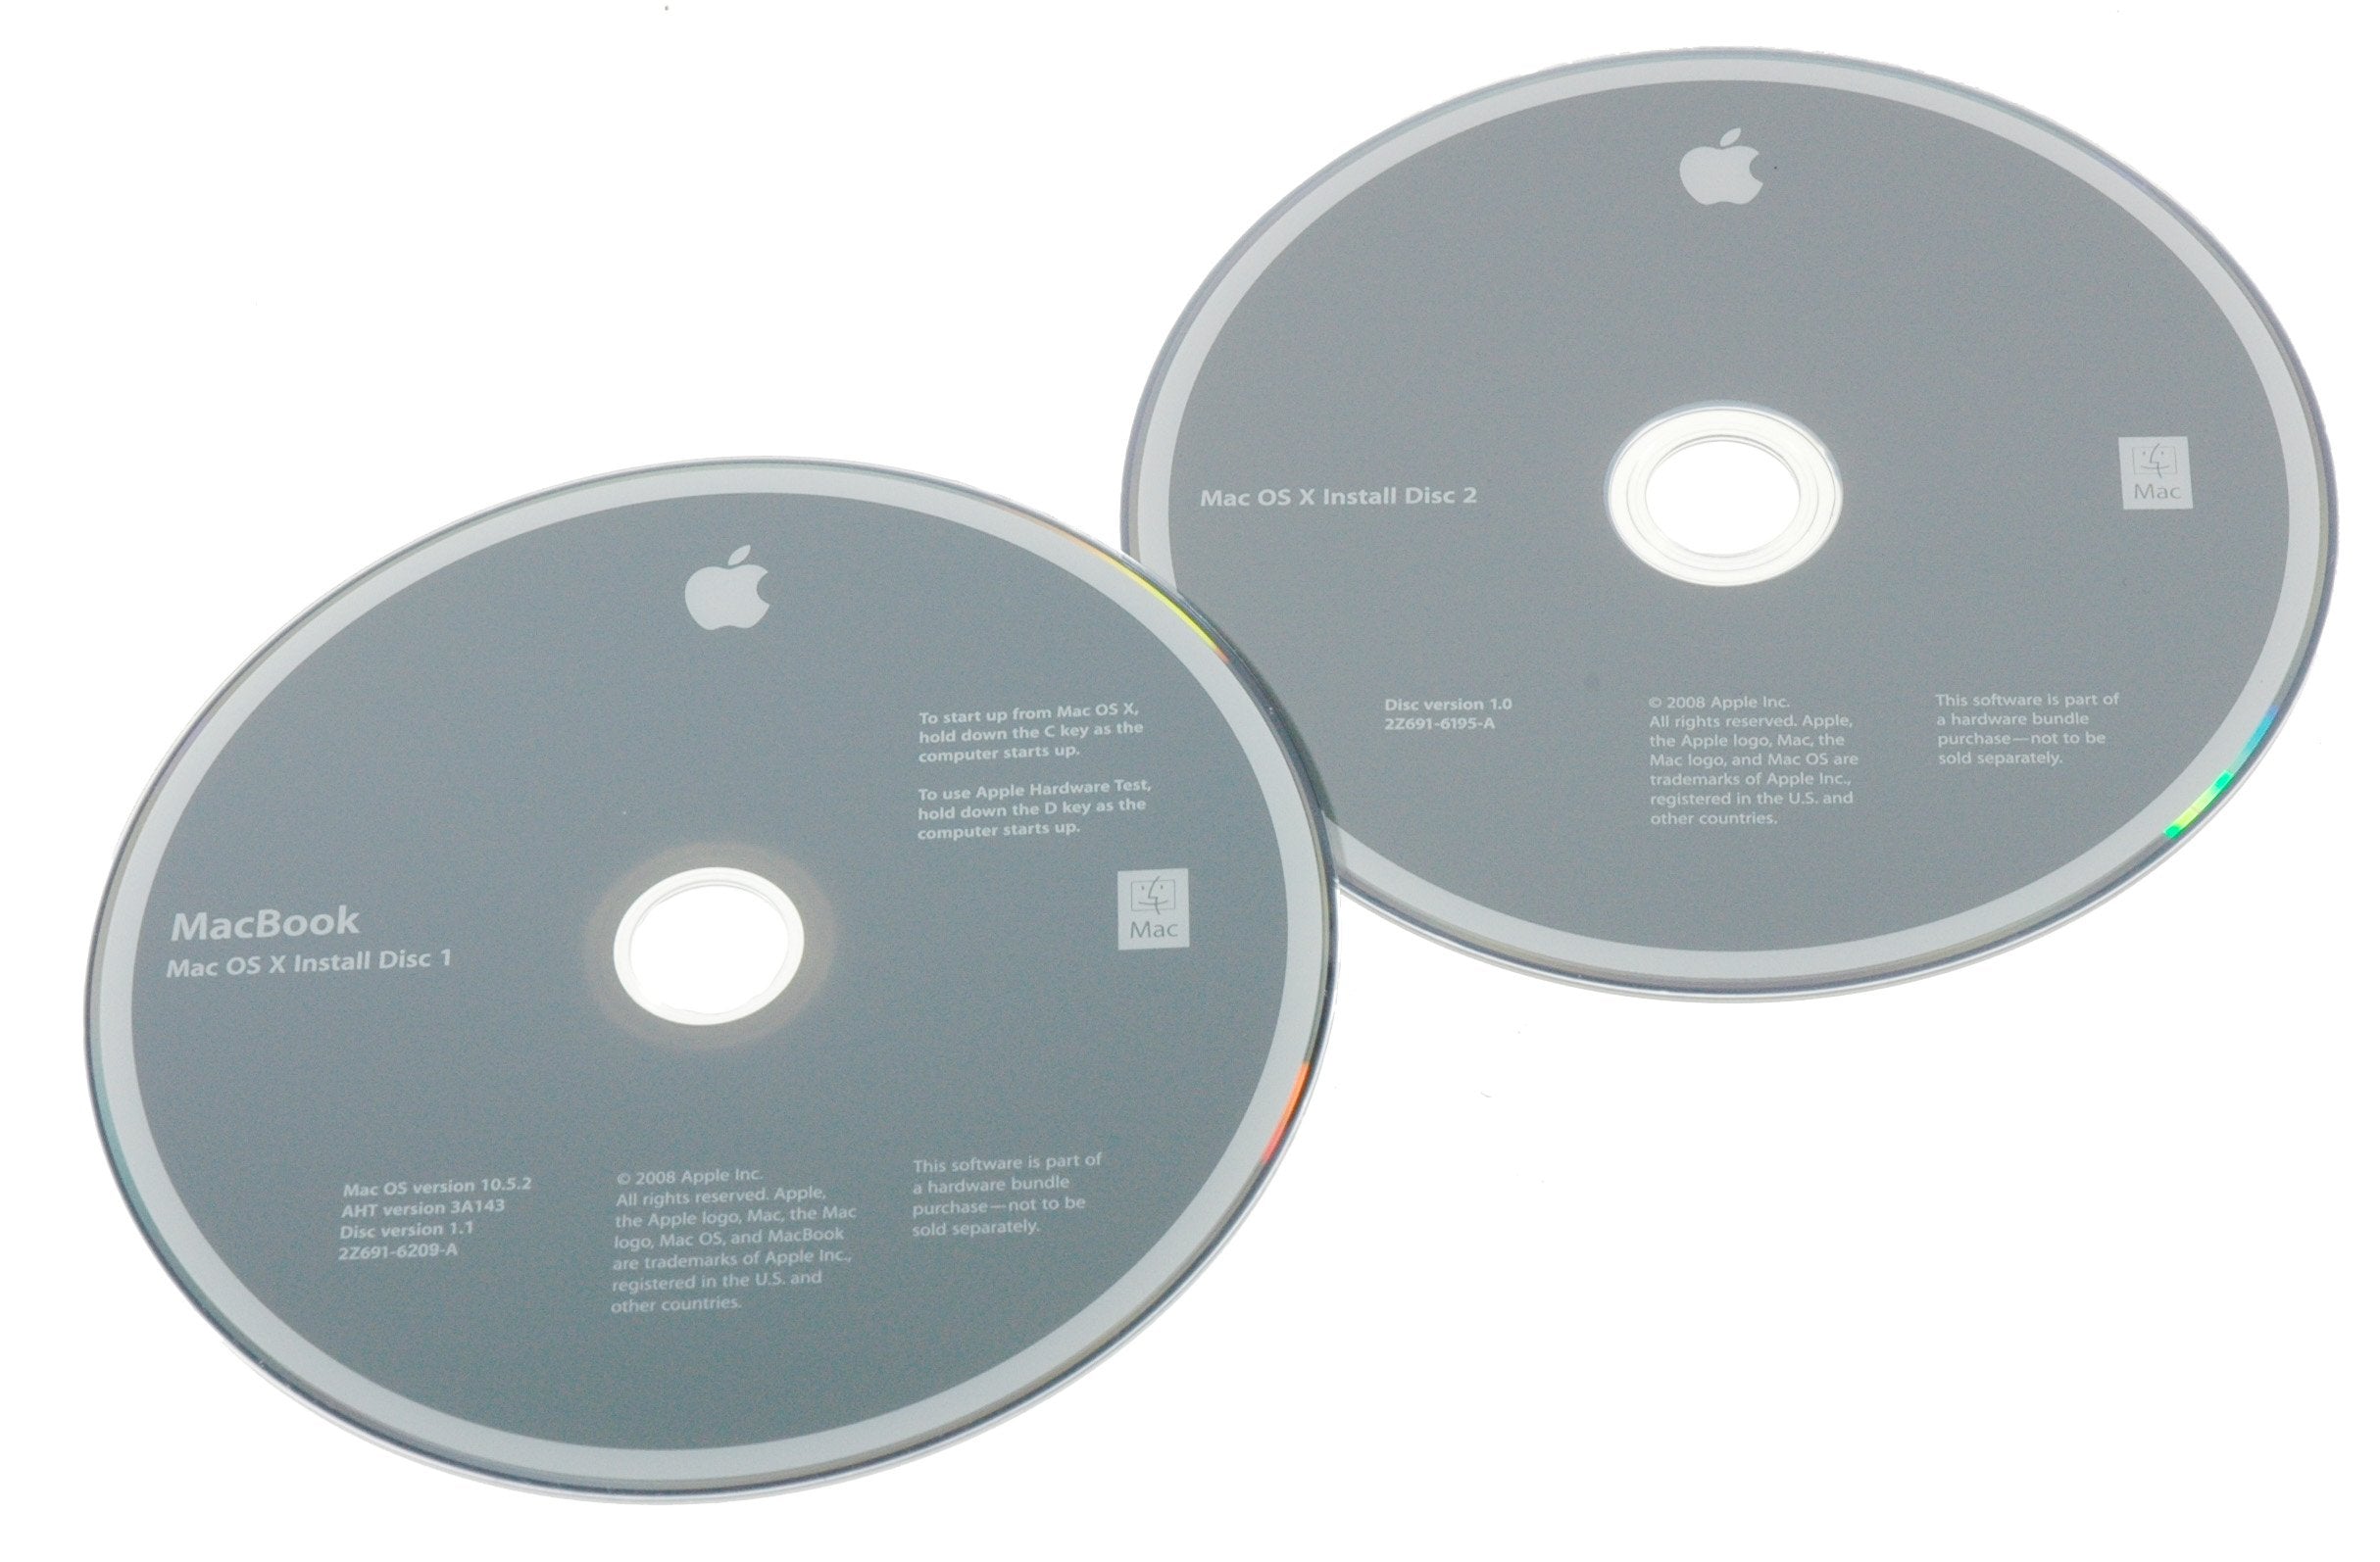 MacBook 2.1/2.4 GHz Core 2 Duo Restore DVDs